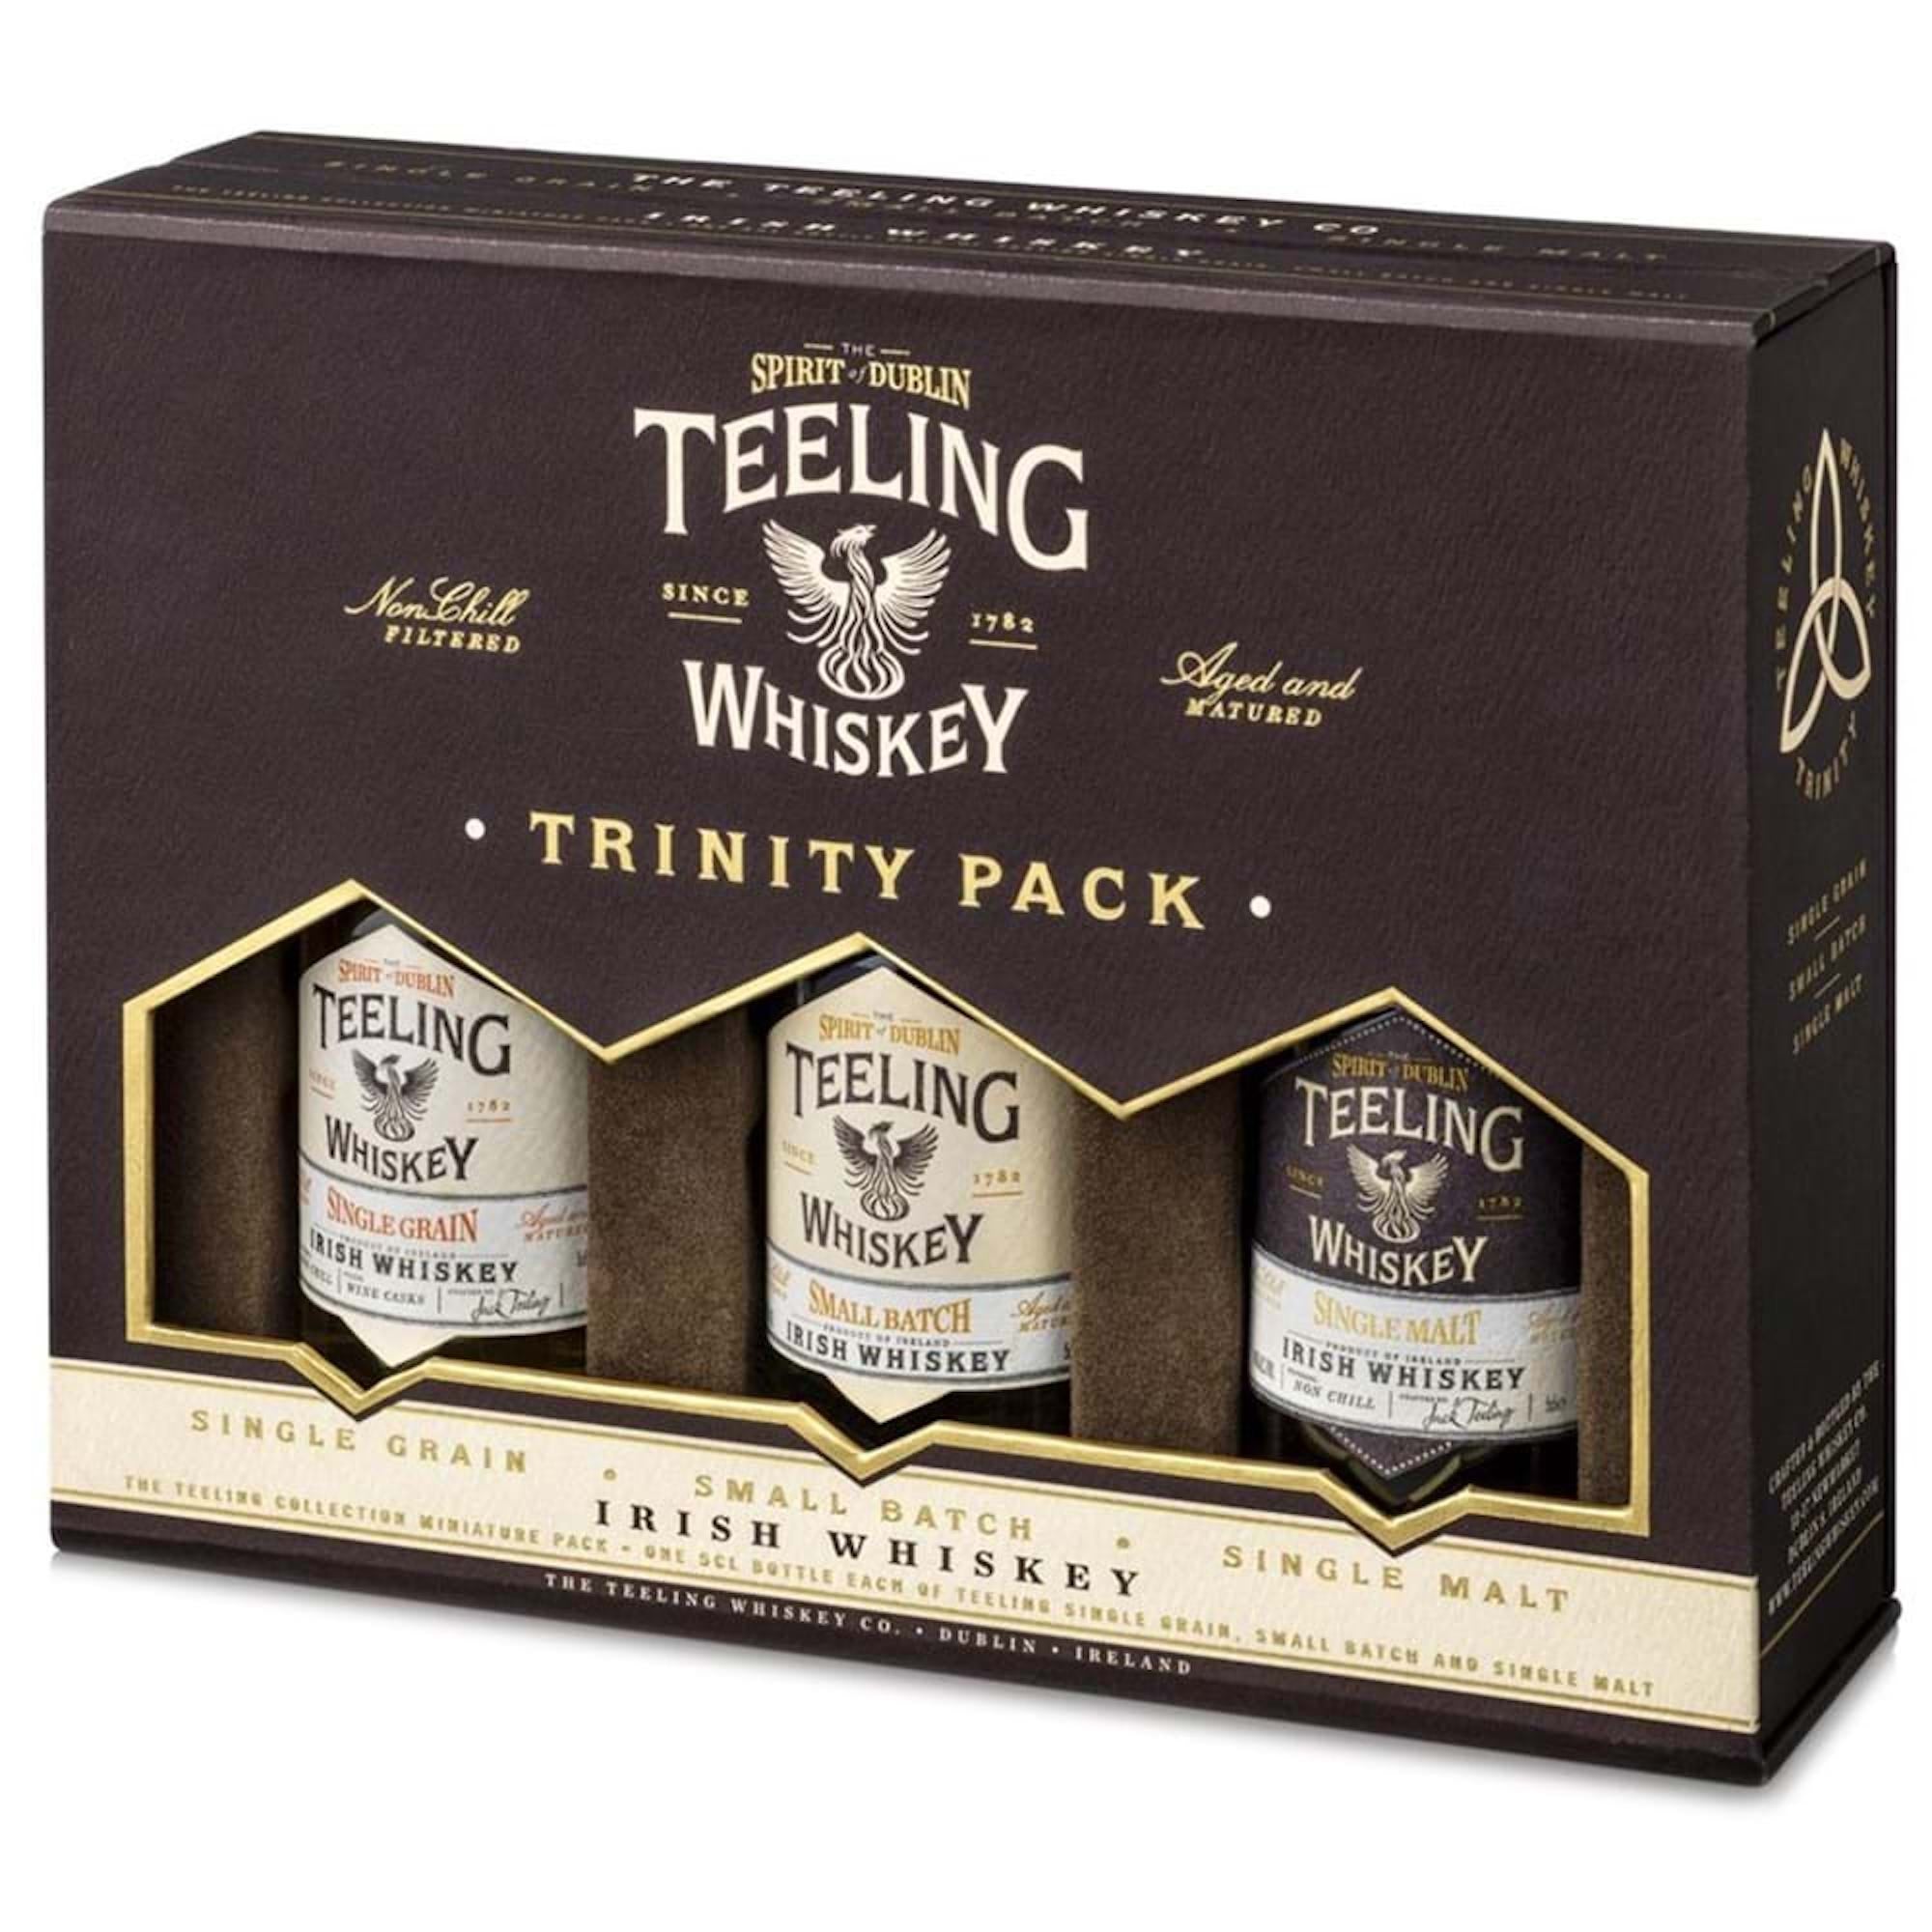 Teeling Whiskey Trinity Pack